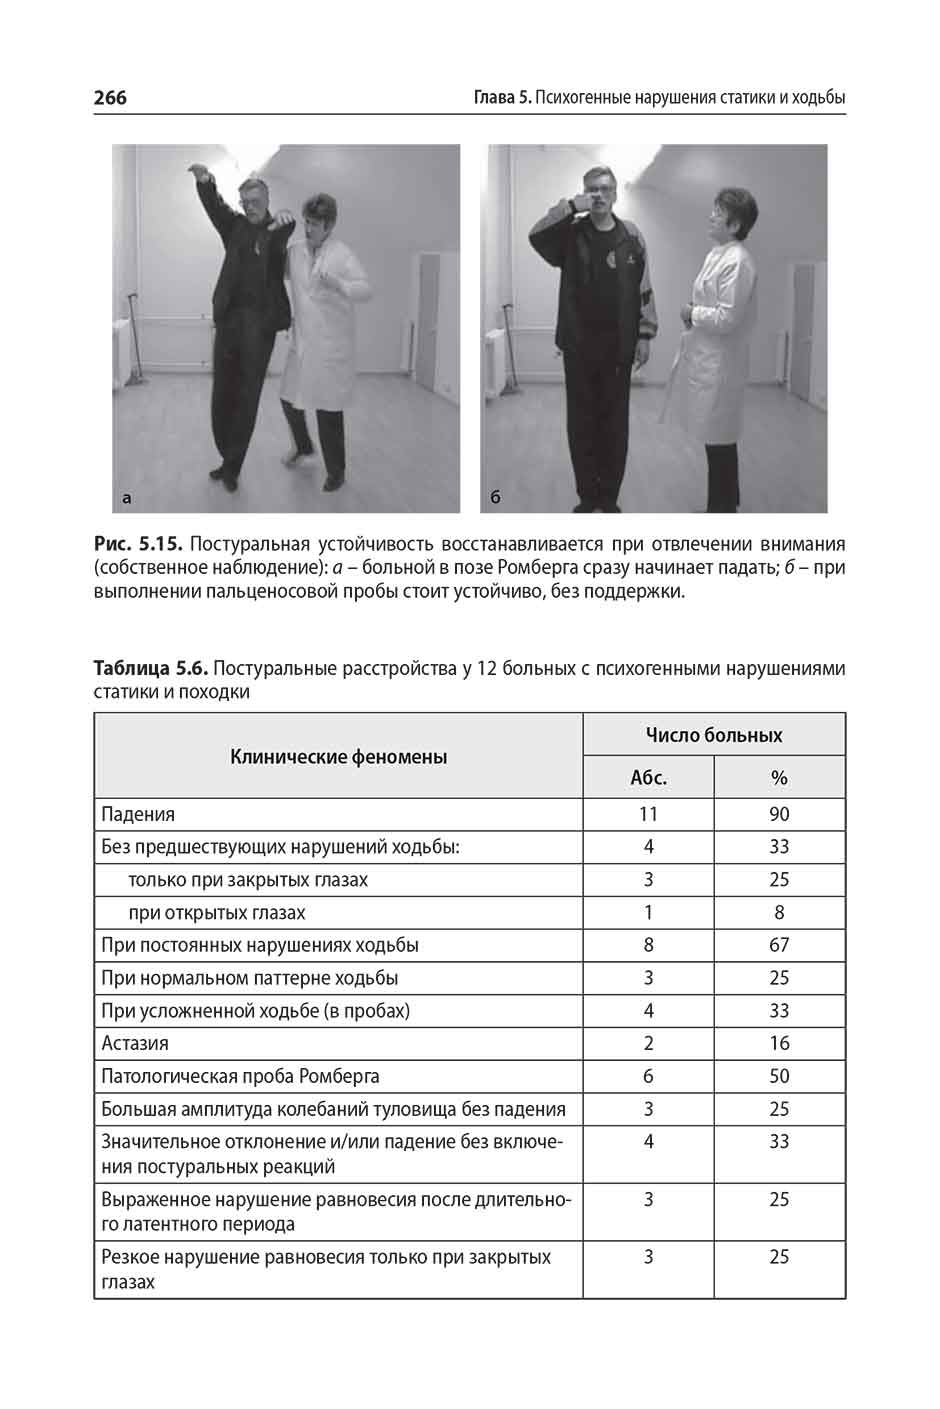 Таблица 5.6. Постуральные расстройства у 12 больных с психогенными нарушениями статики и походки